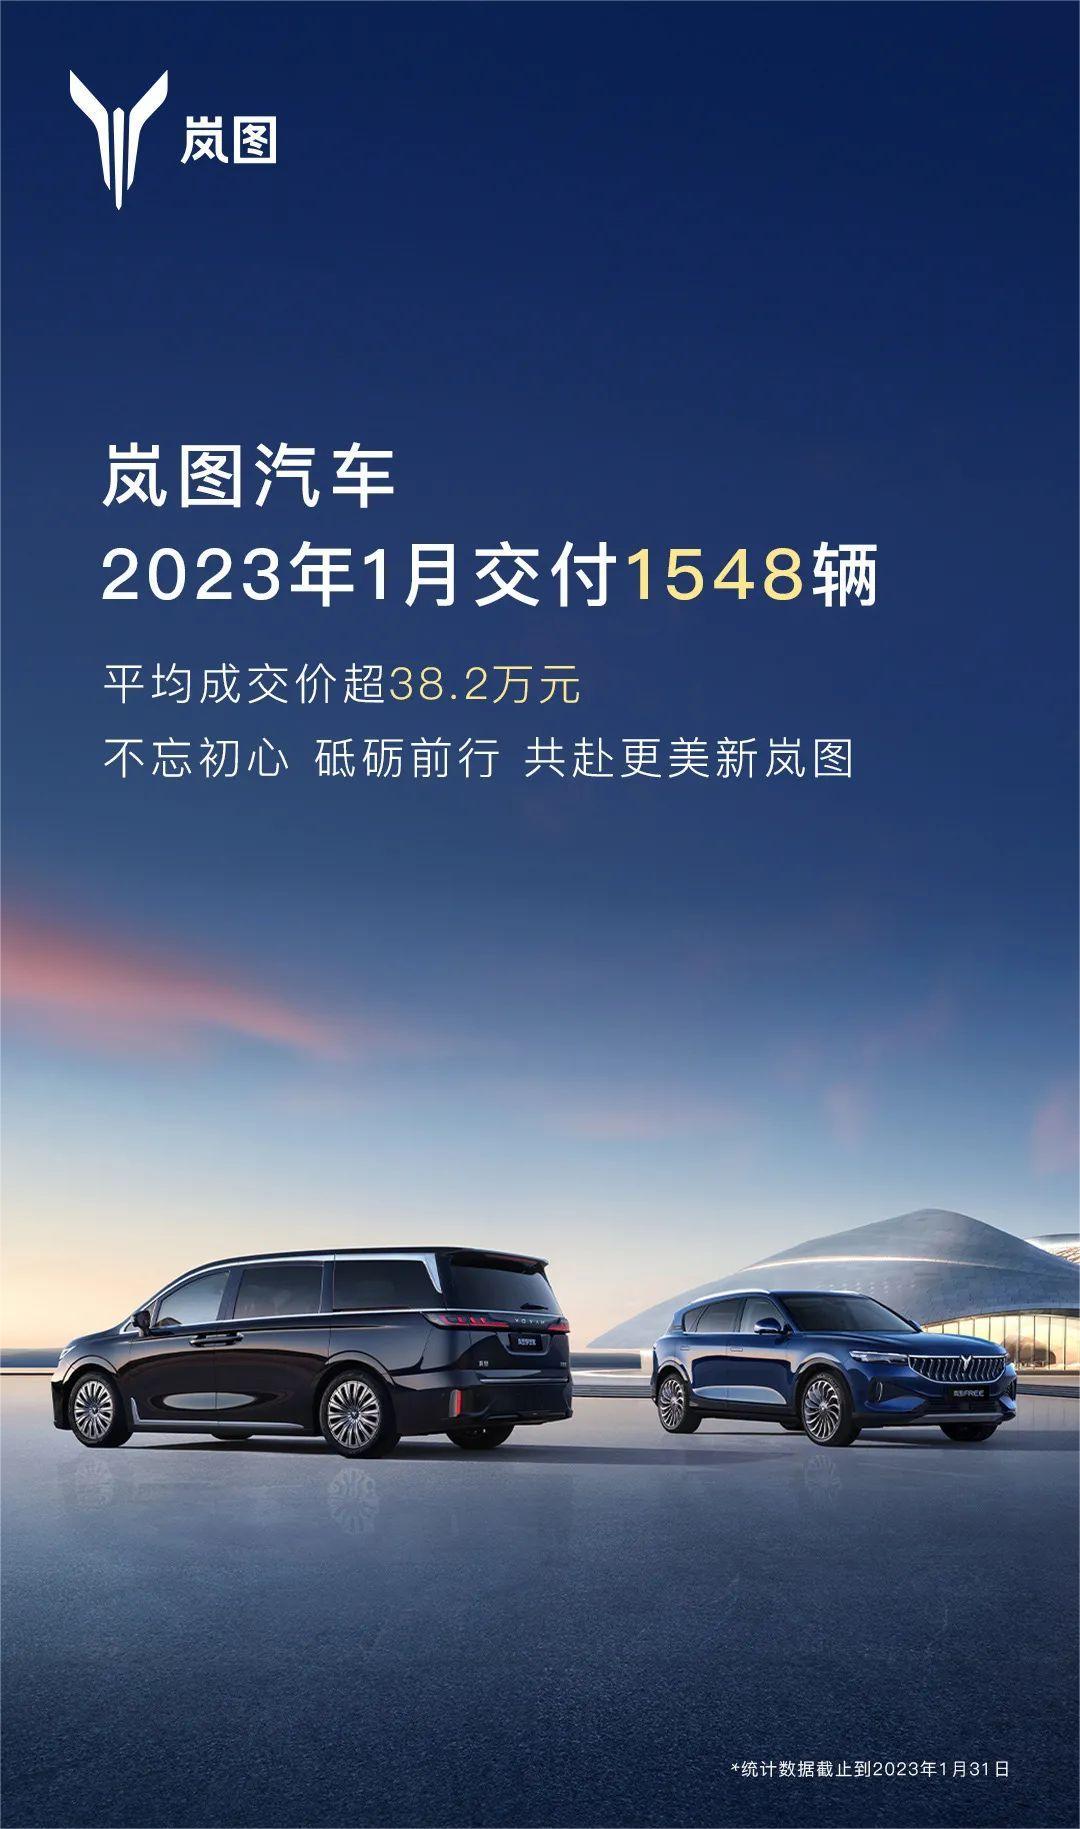 岚图汽车1月交付新车1548辆 环比下降10.5%